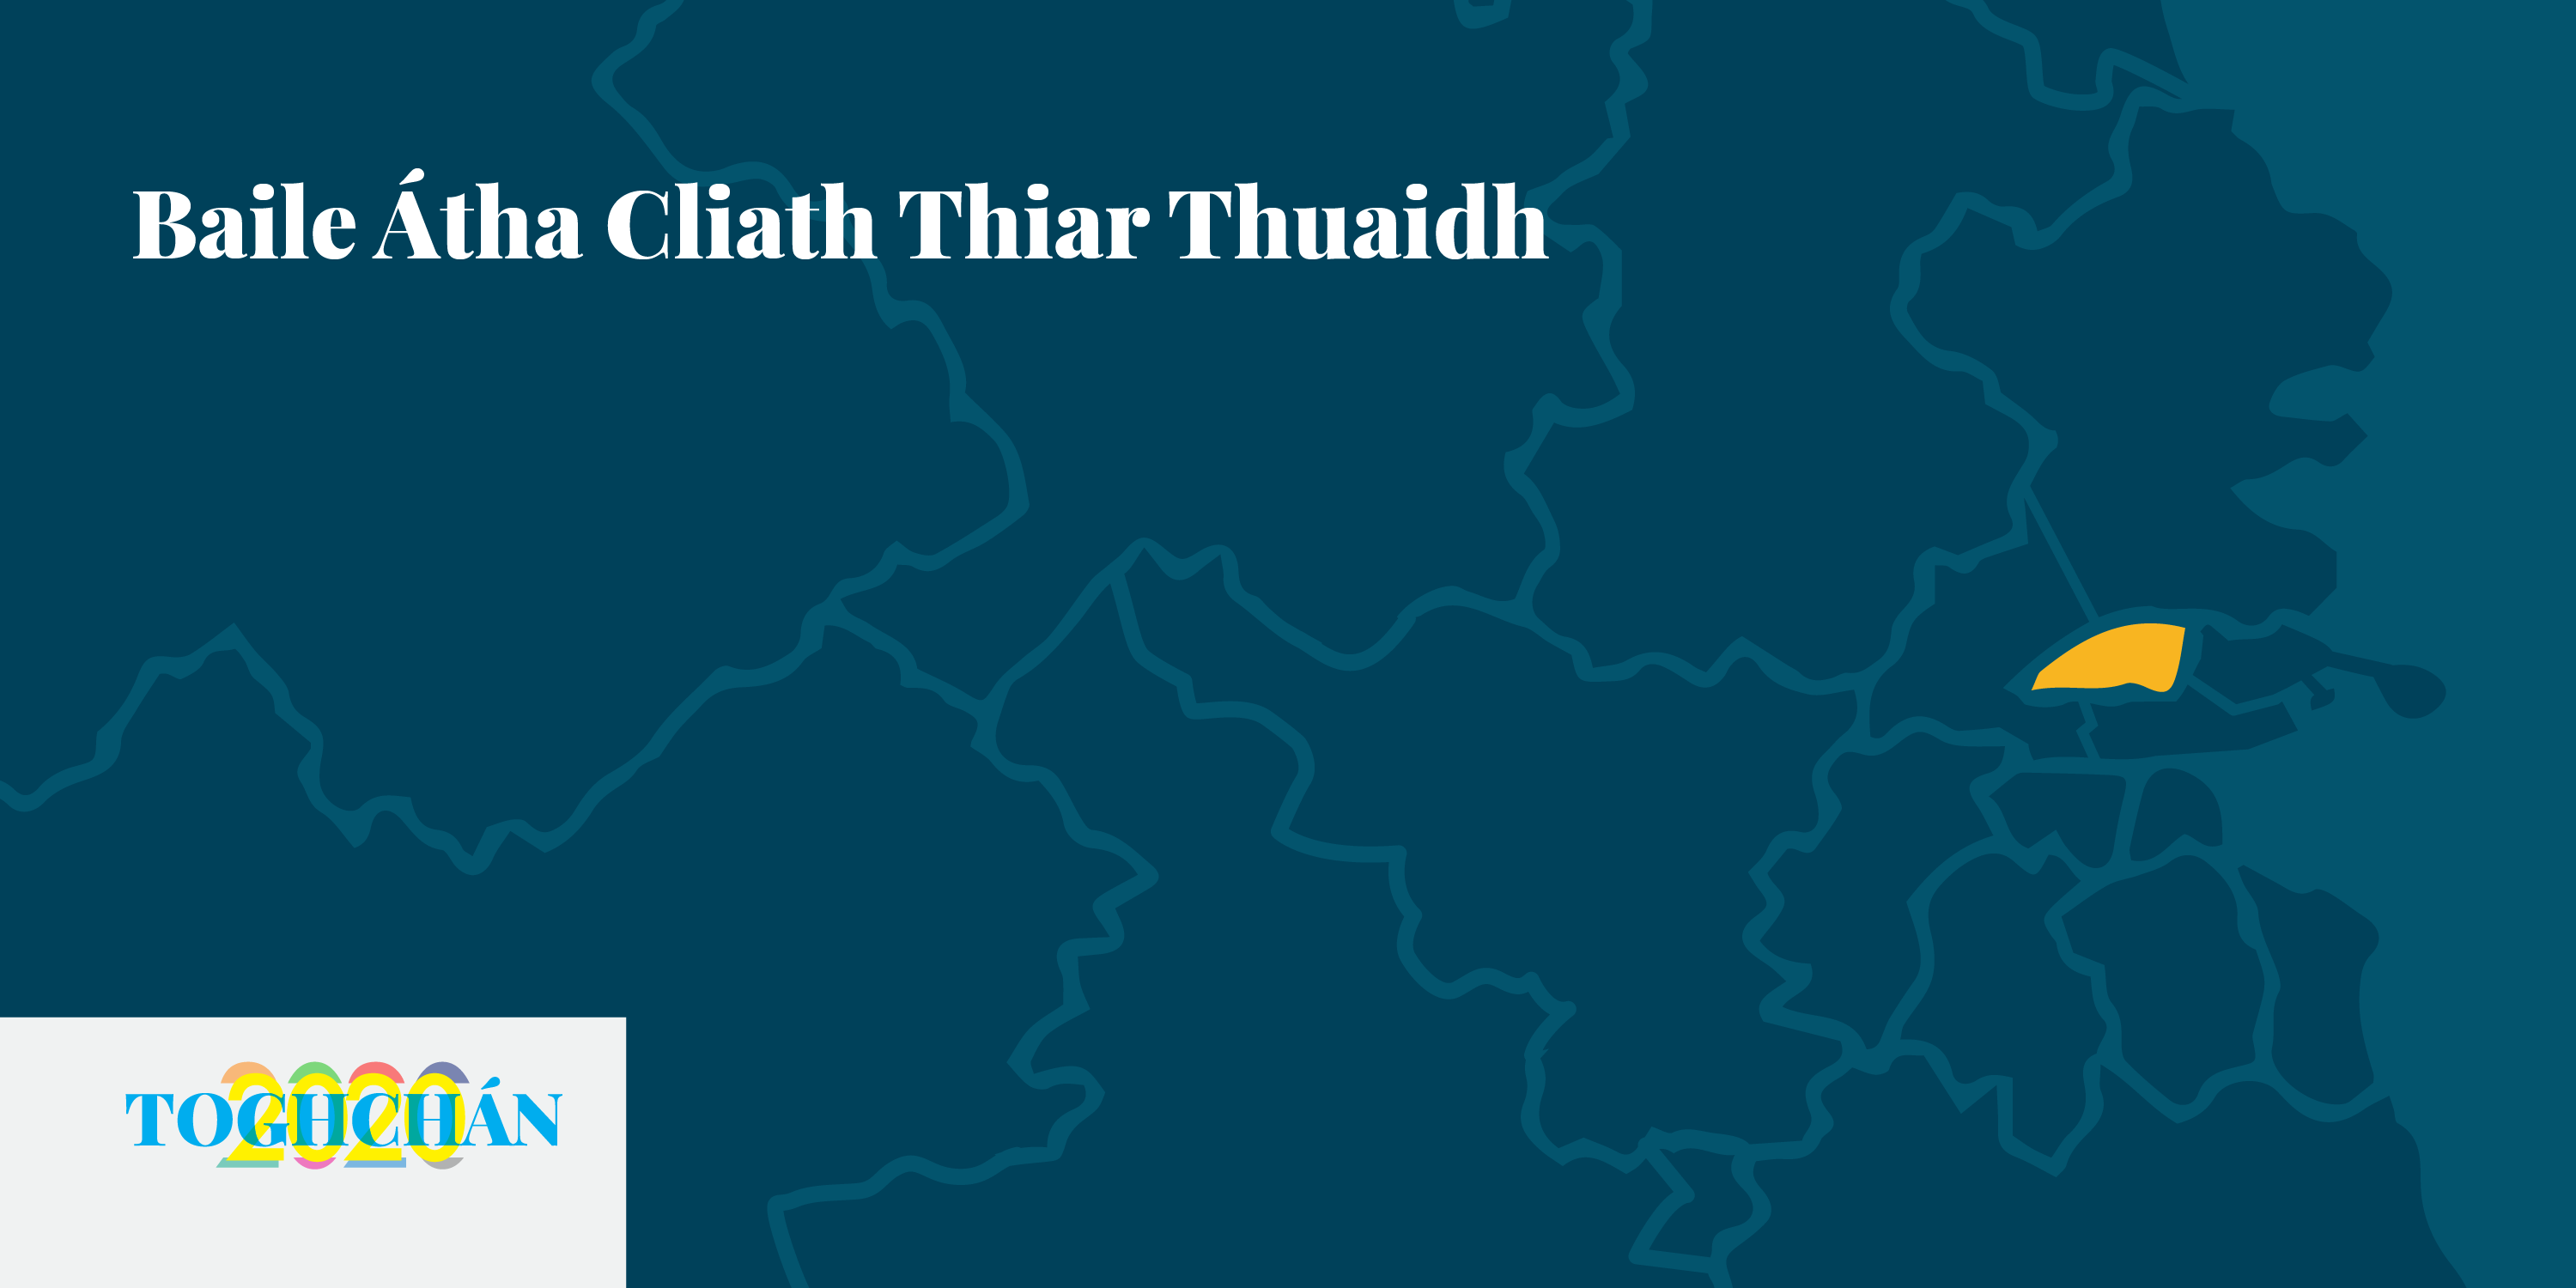 TOGHCHÁN 2020: McAuliffe chun Rock a leagadh i mBaile Átha Cliath Thiar Thuaidh